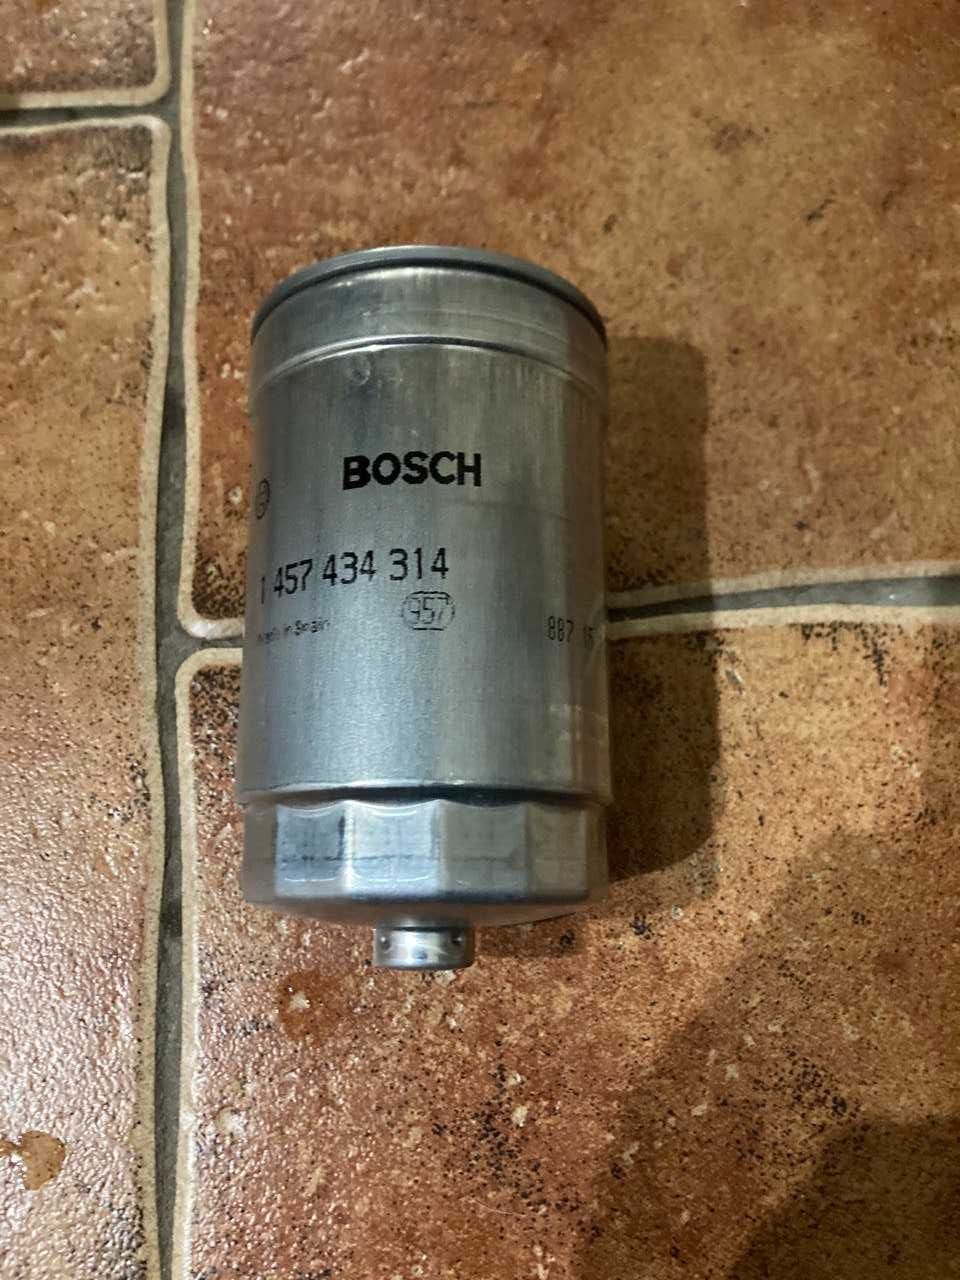 Новый фильтр топливный Bosch 1457434314